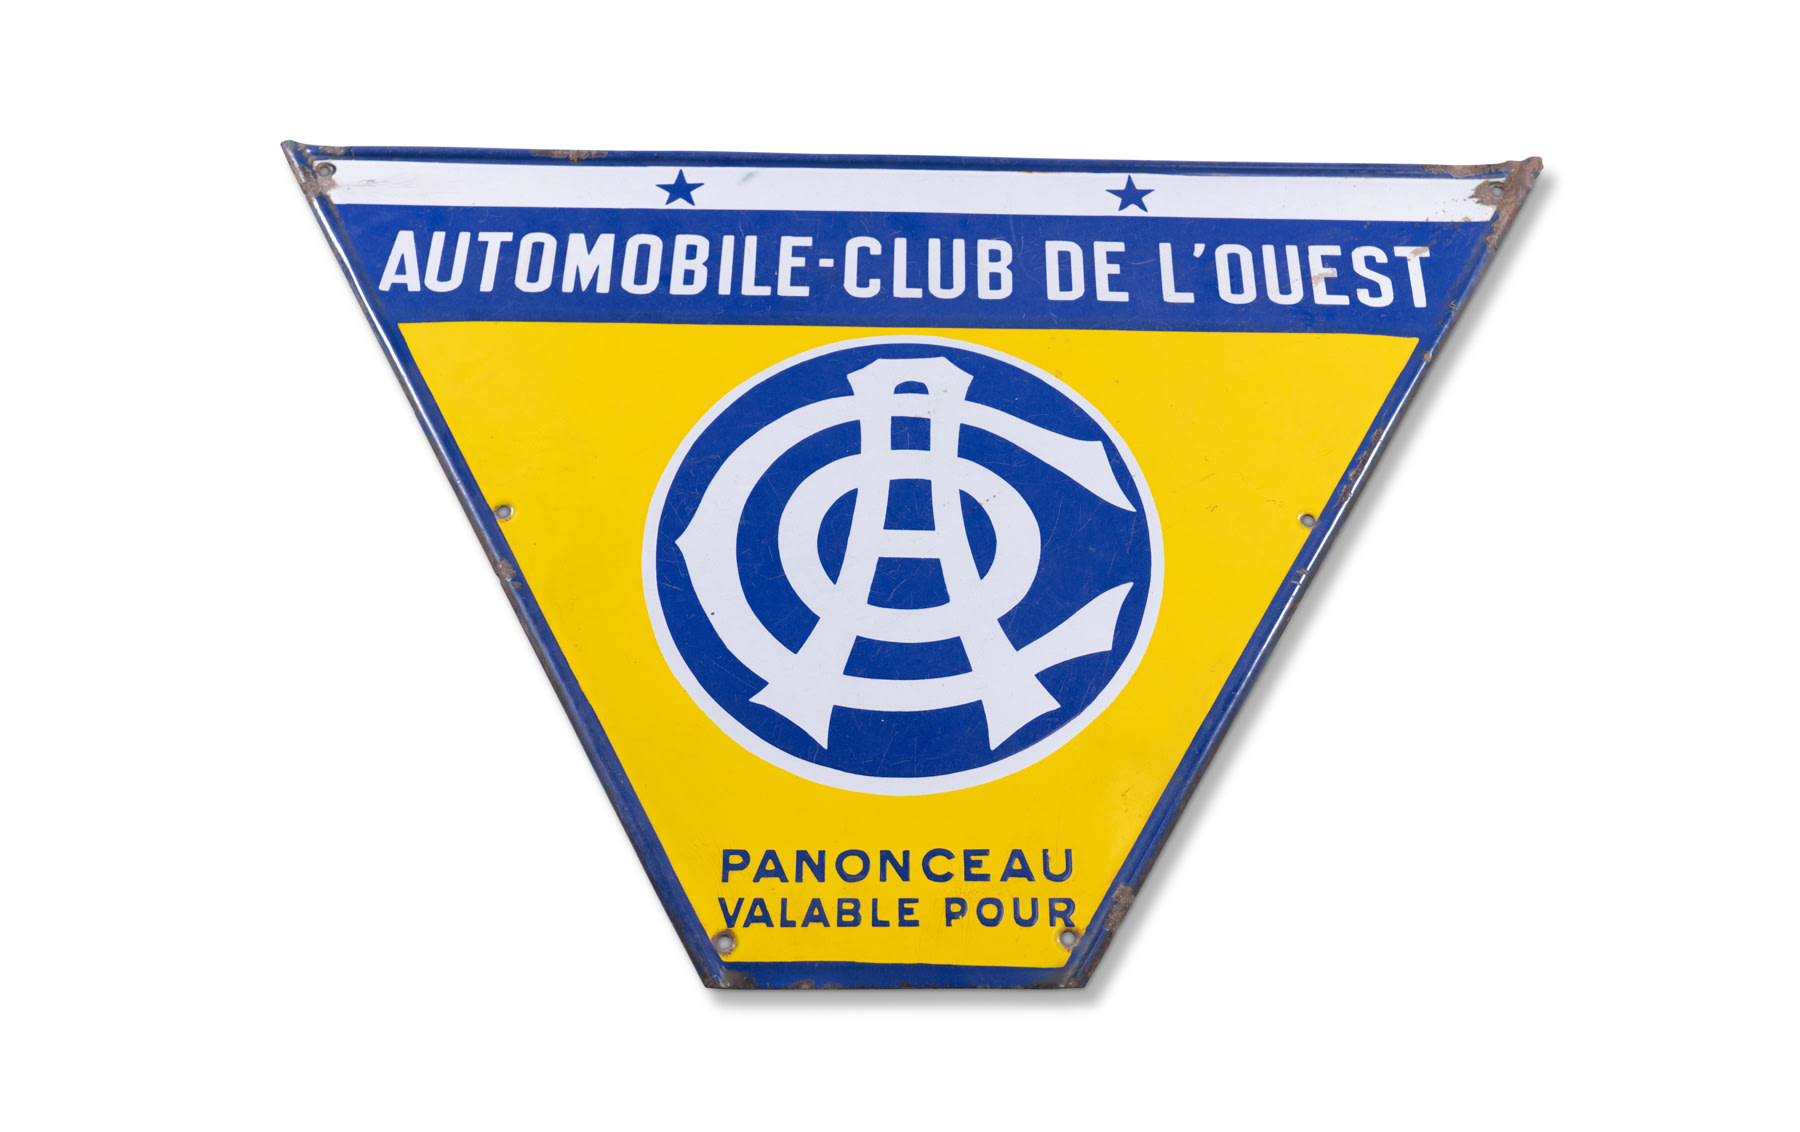 Automobile Club de l'Ouest Sign